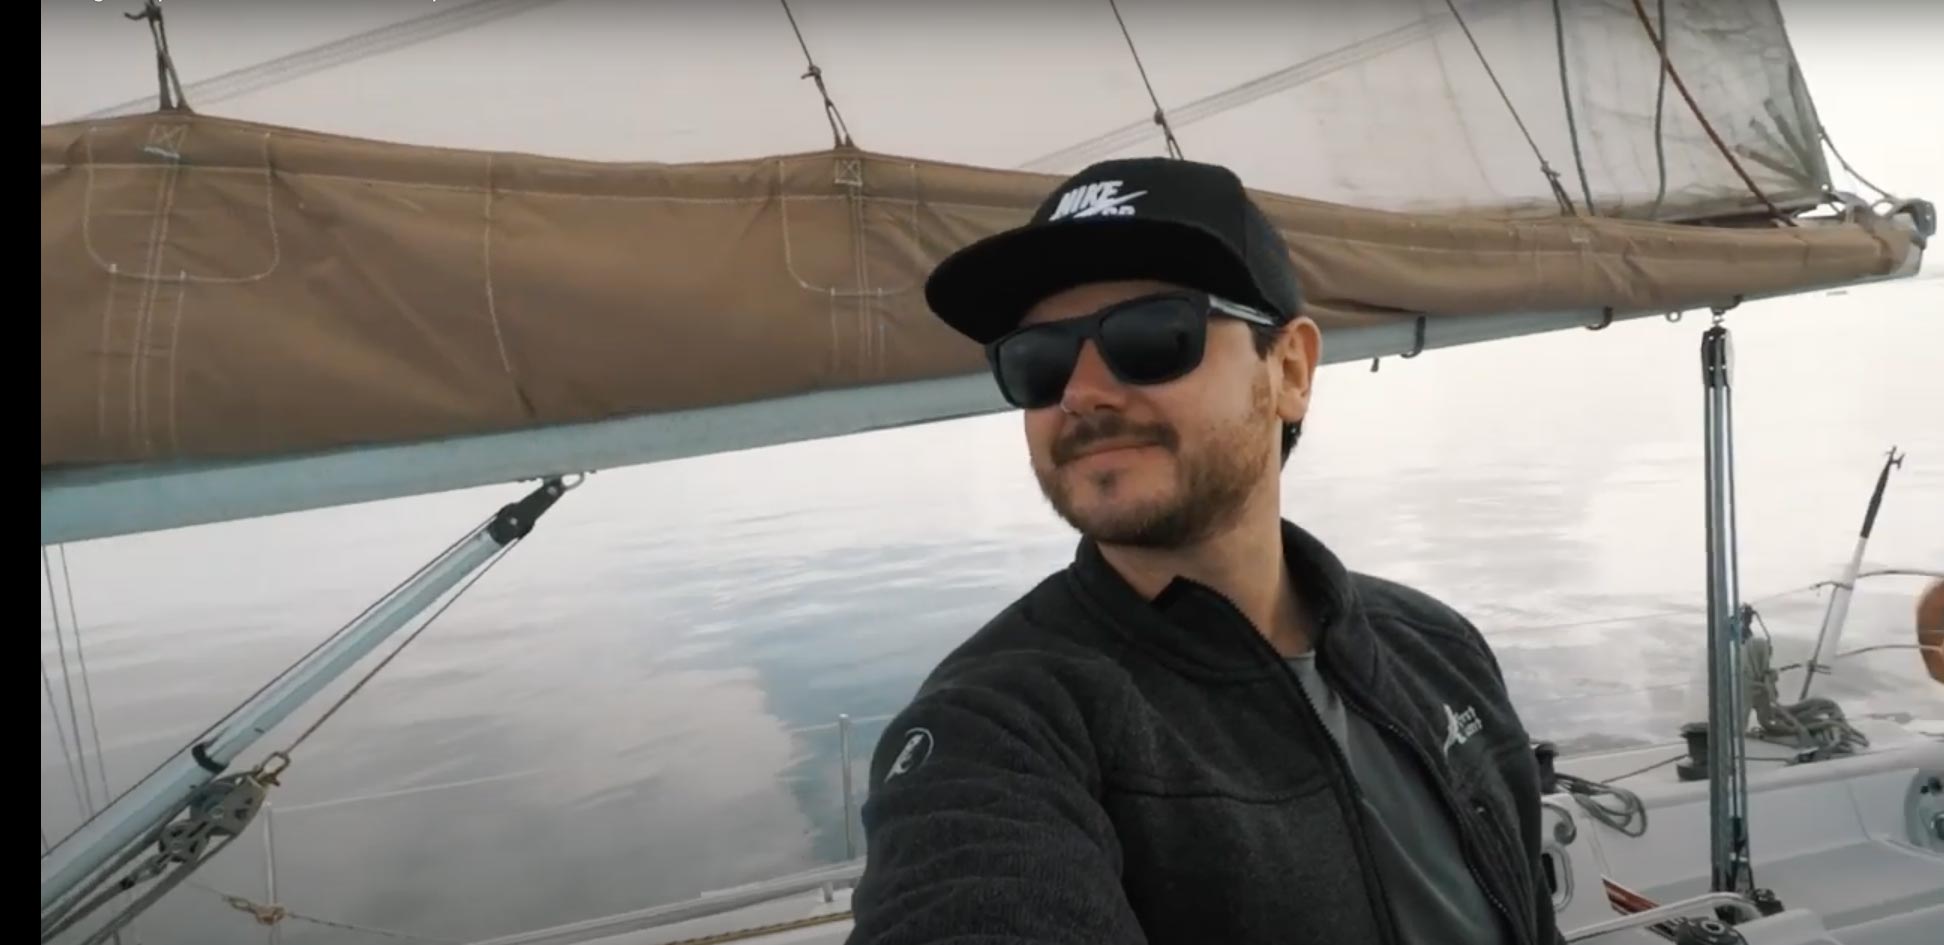 John O Nola in a sailboat